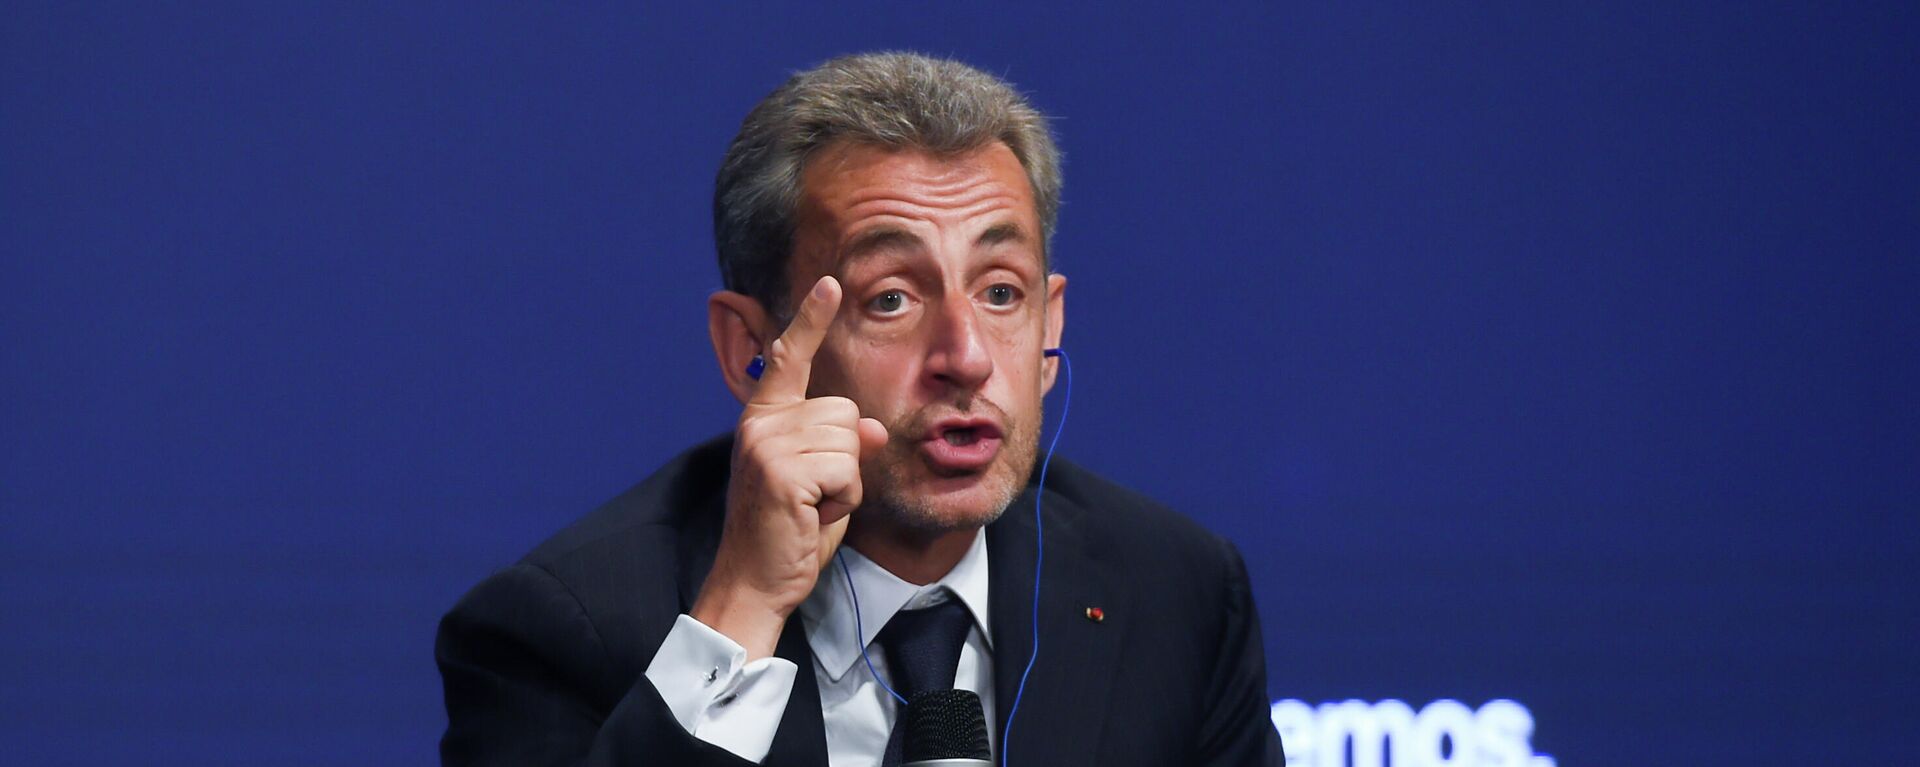 El expresidente de Francia Nicolas Sarkozy, durante la mesa titulada ‘La sociedad abierta y sus enemigos’, en el marco de la tercera jornada de la Convención Nacional del PP - Sputnik Mundo, 1920, 30.09.2021